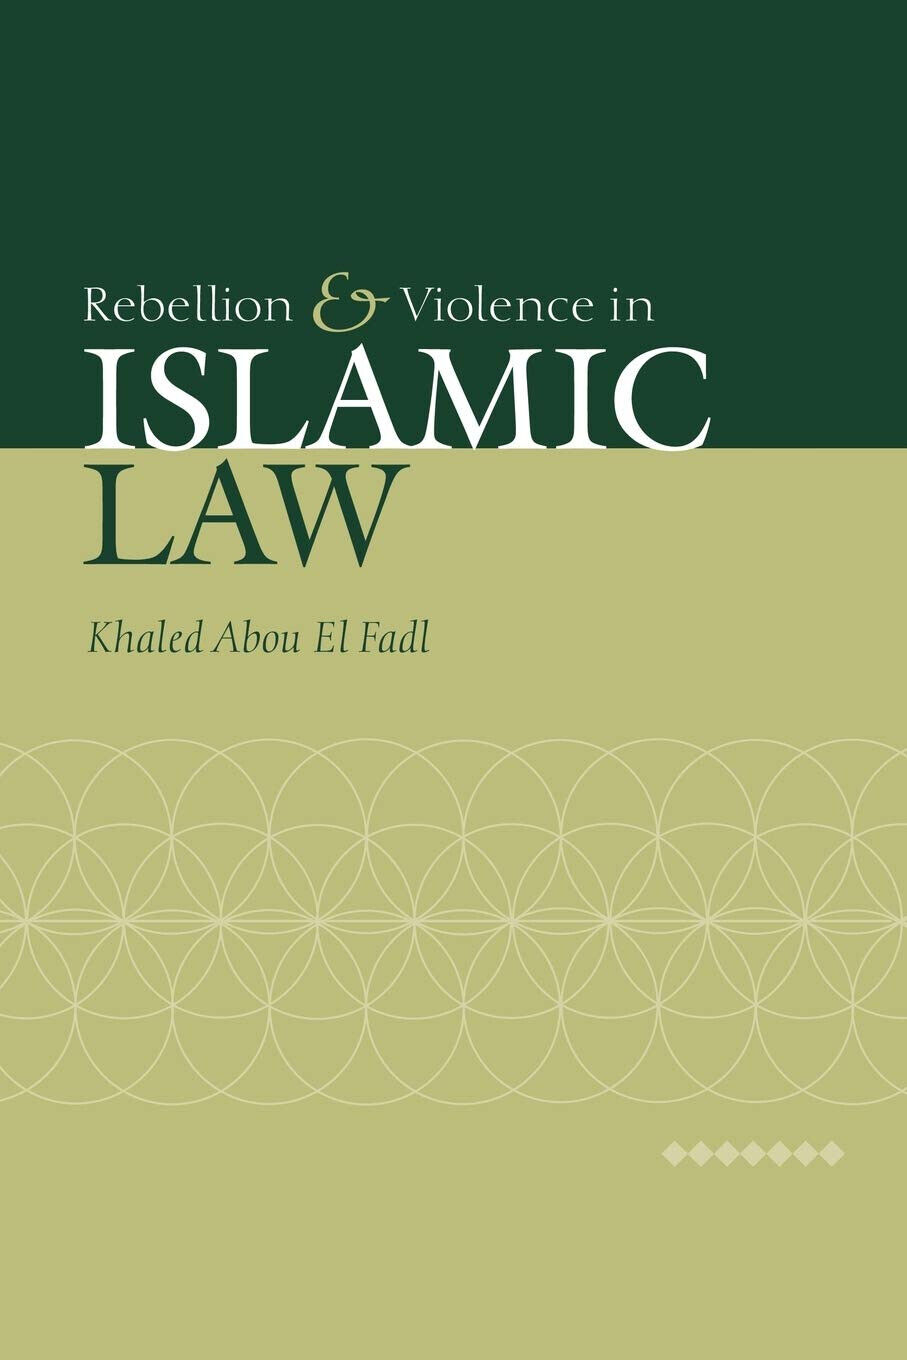 Rebellion and Violence in Islamic Law - El Fadl - Cambridge, 2008 libro usato